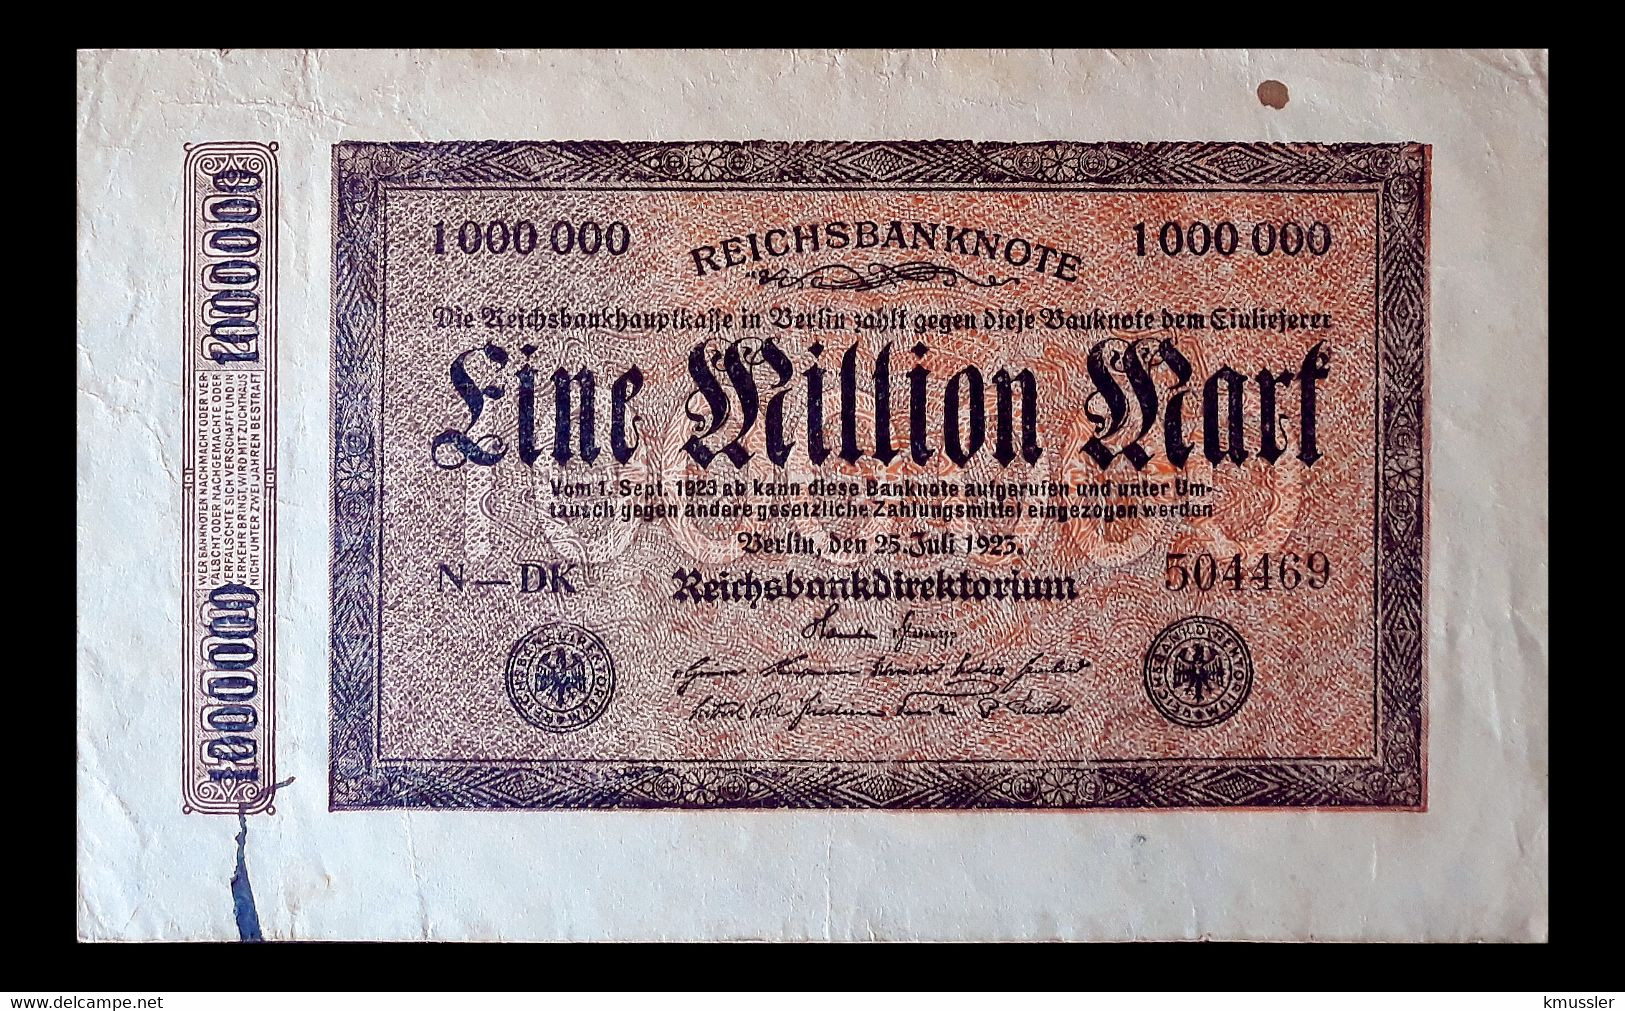 # # # Banknote Germany (Dt. Reich) 1 Mio Mark 1922 # # # - 1 Million Mark